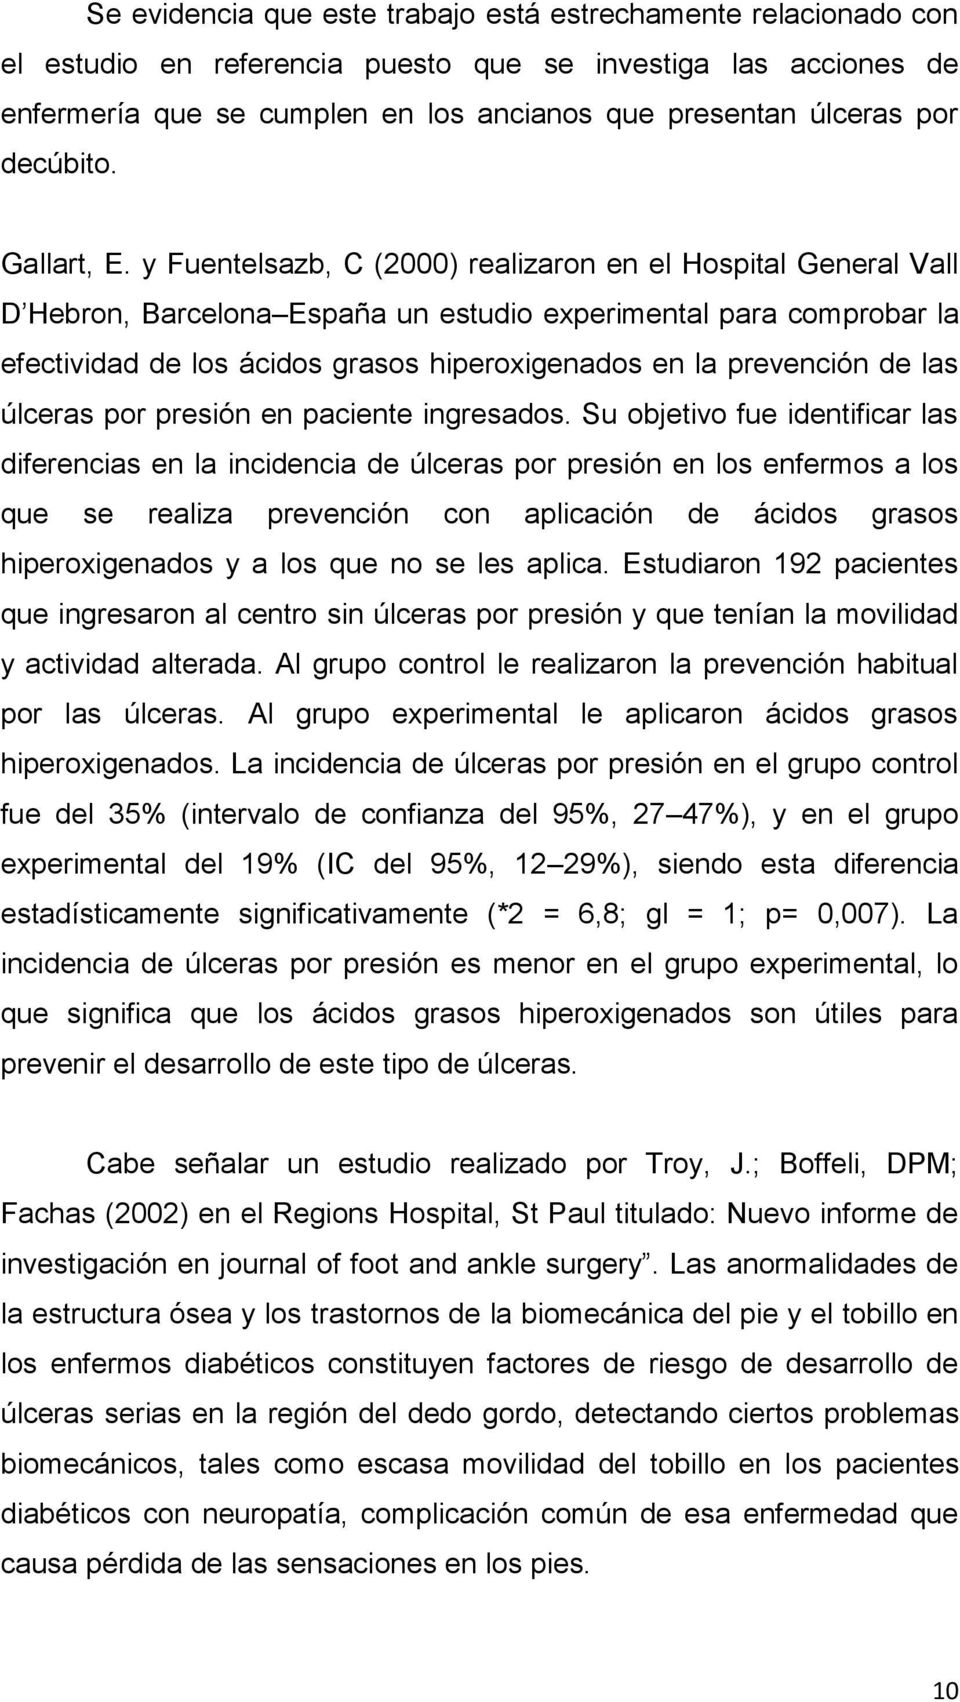 y Fuentelsazb, C (2000) realizaron en el Hospital General Vall D Hebron, Barcelona España un estudio experimental para comprobar la efectividad de los ácidos grasos hiperoxigenados en la prevención